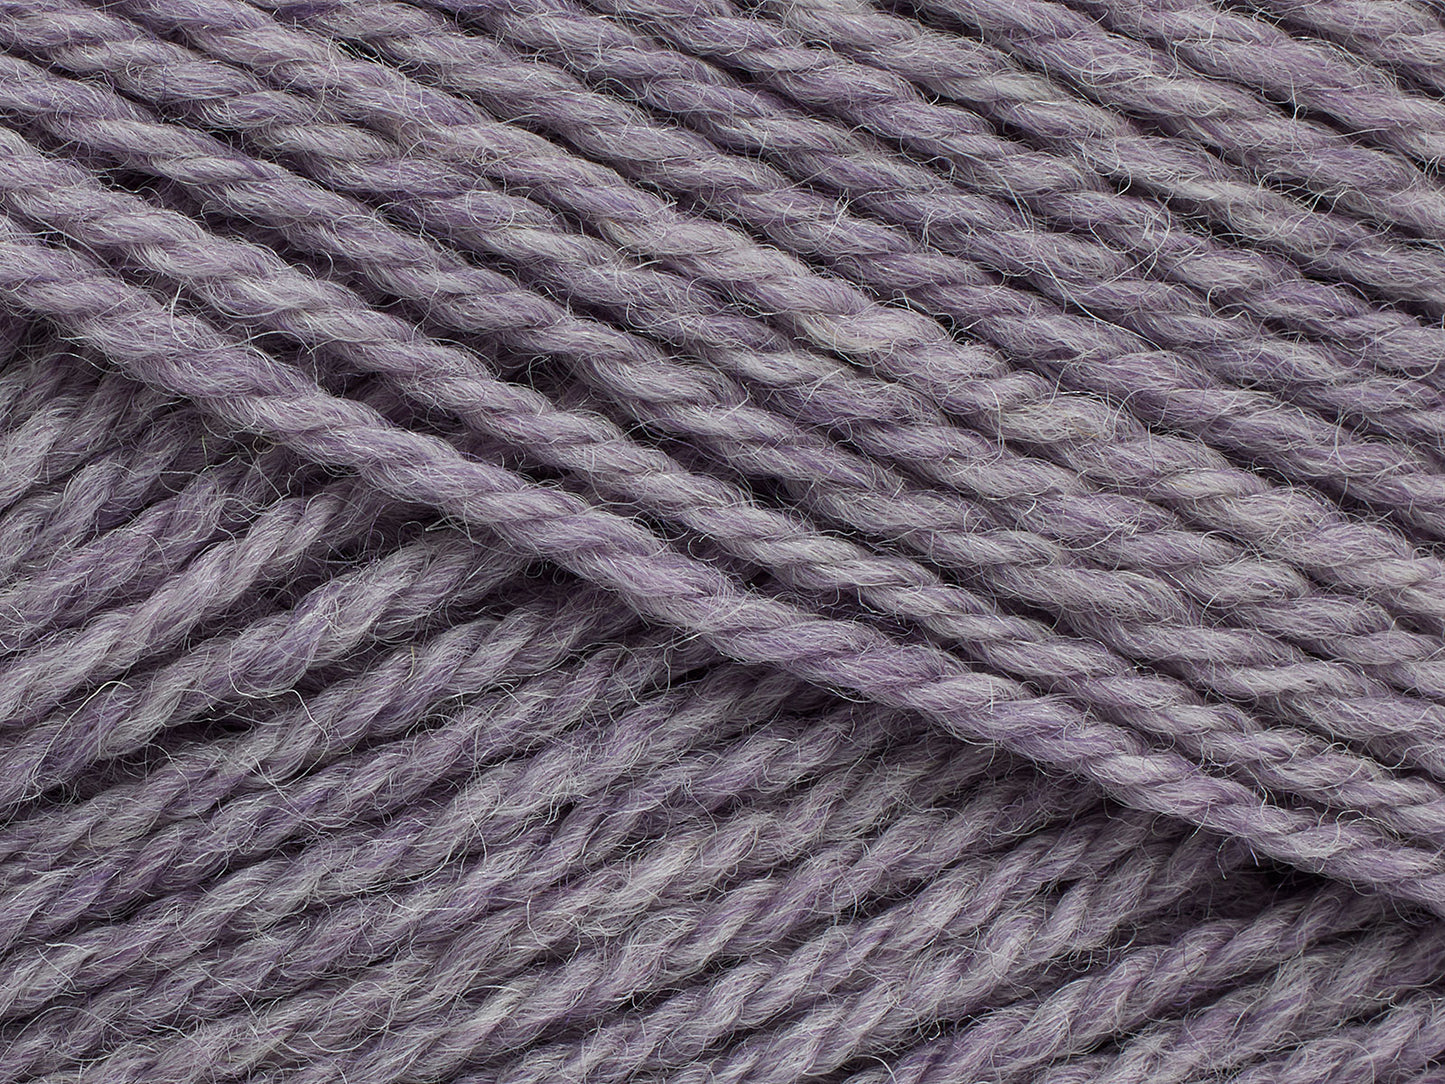 815 - Lavender Grey (melange)